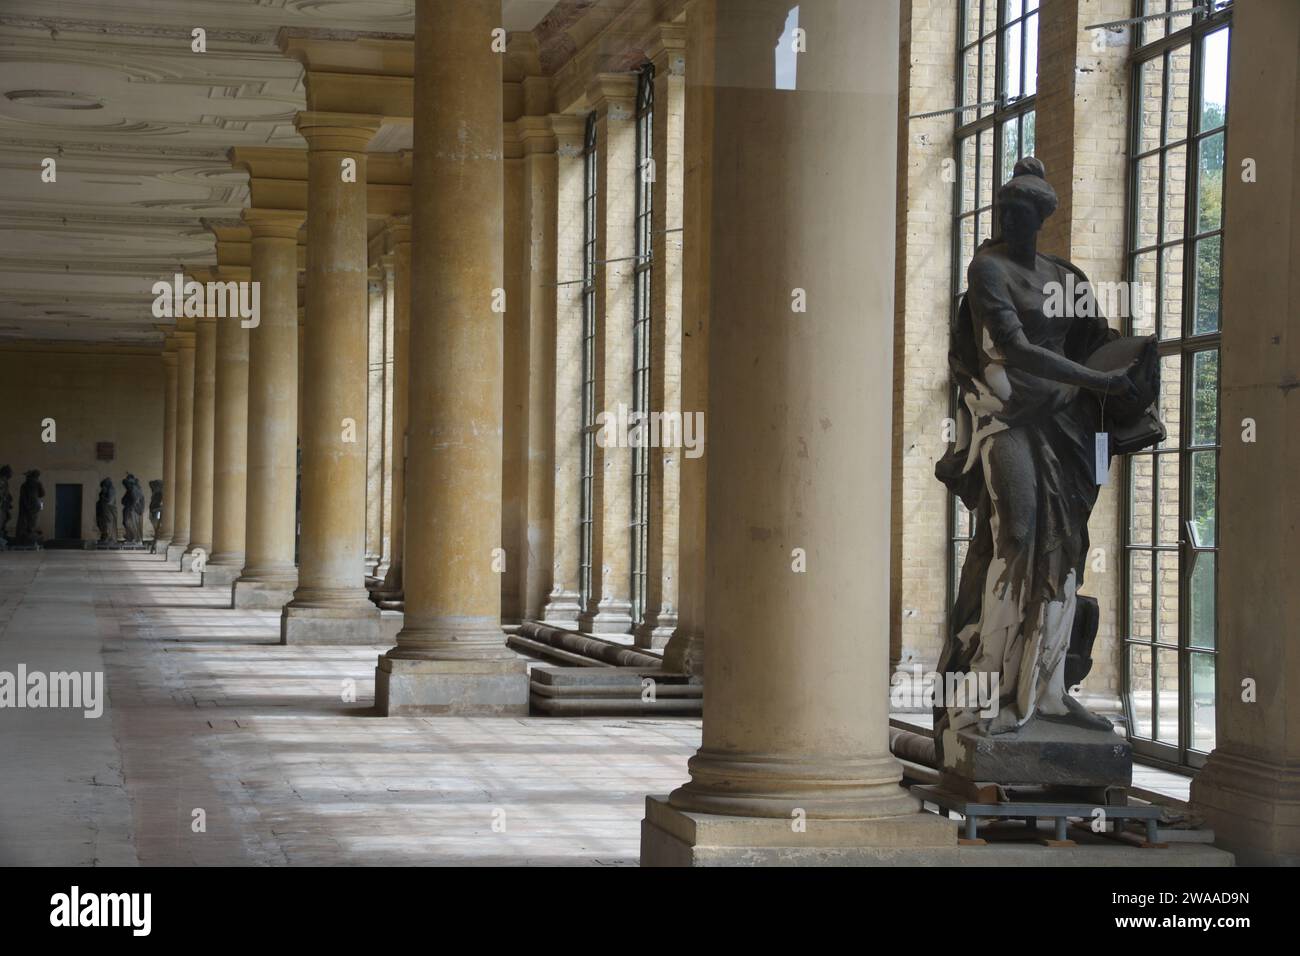 Un tranquillo colonnato adornato con sculture classiche cattura l'atmosfera tranquilla e storica di Potsdam, invitante riflessione e ammirazione. Foto Stock